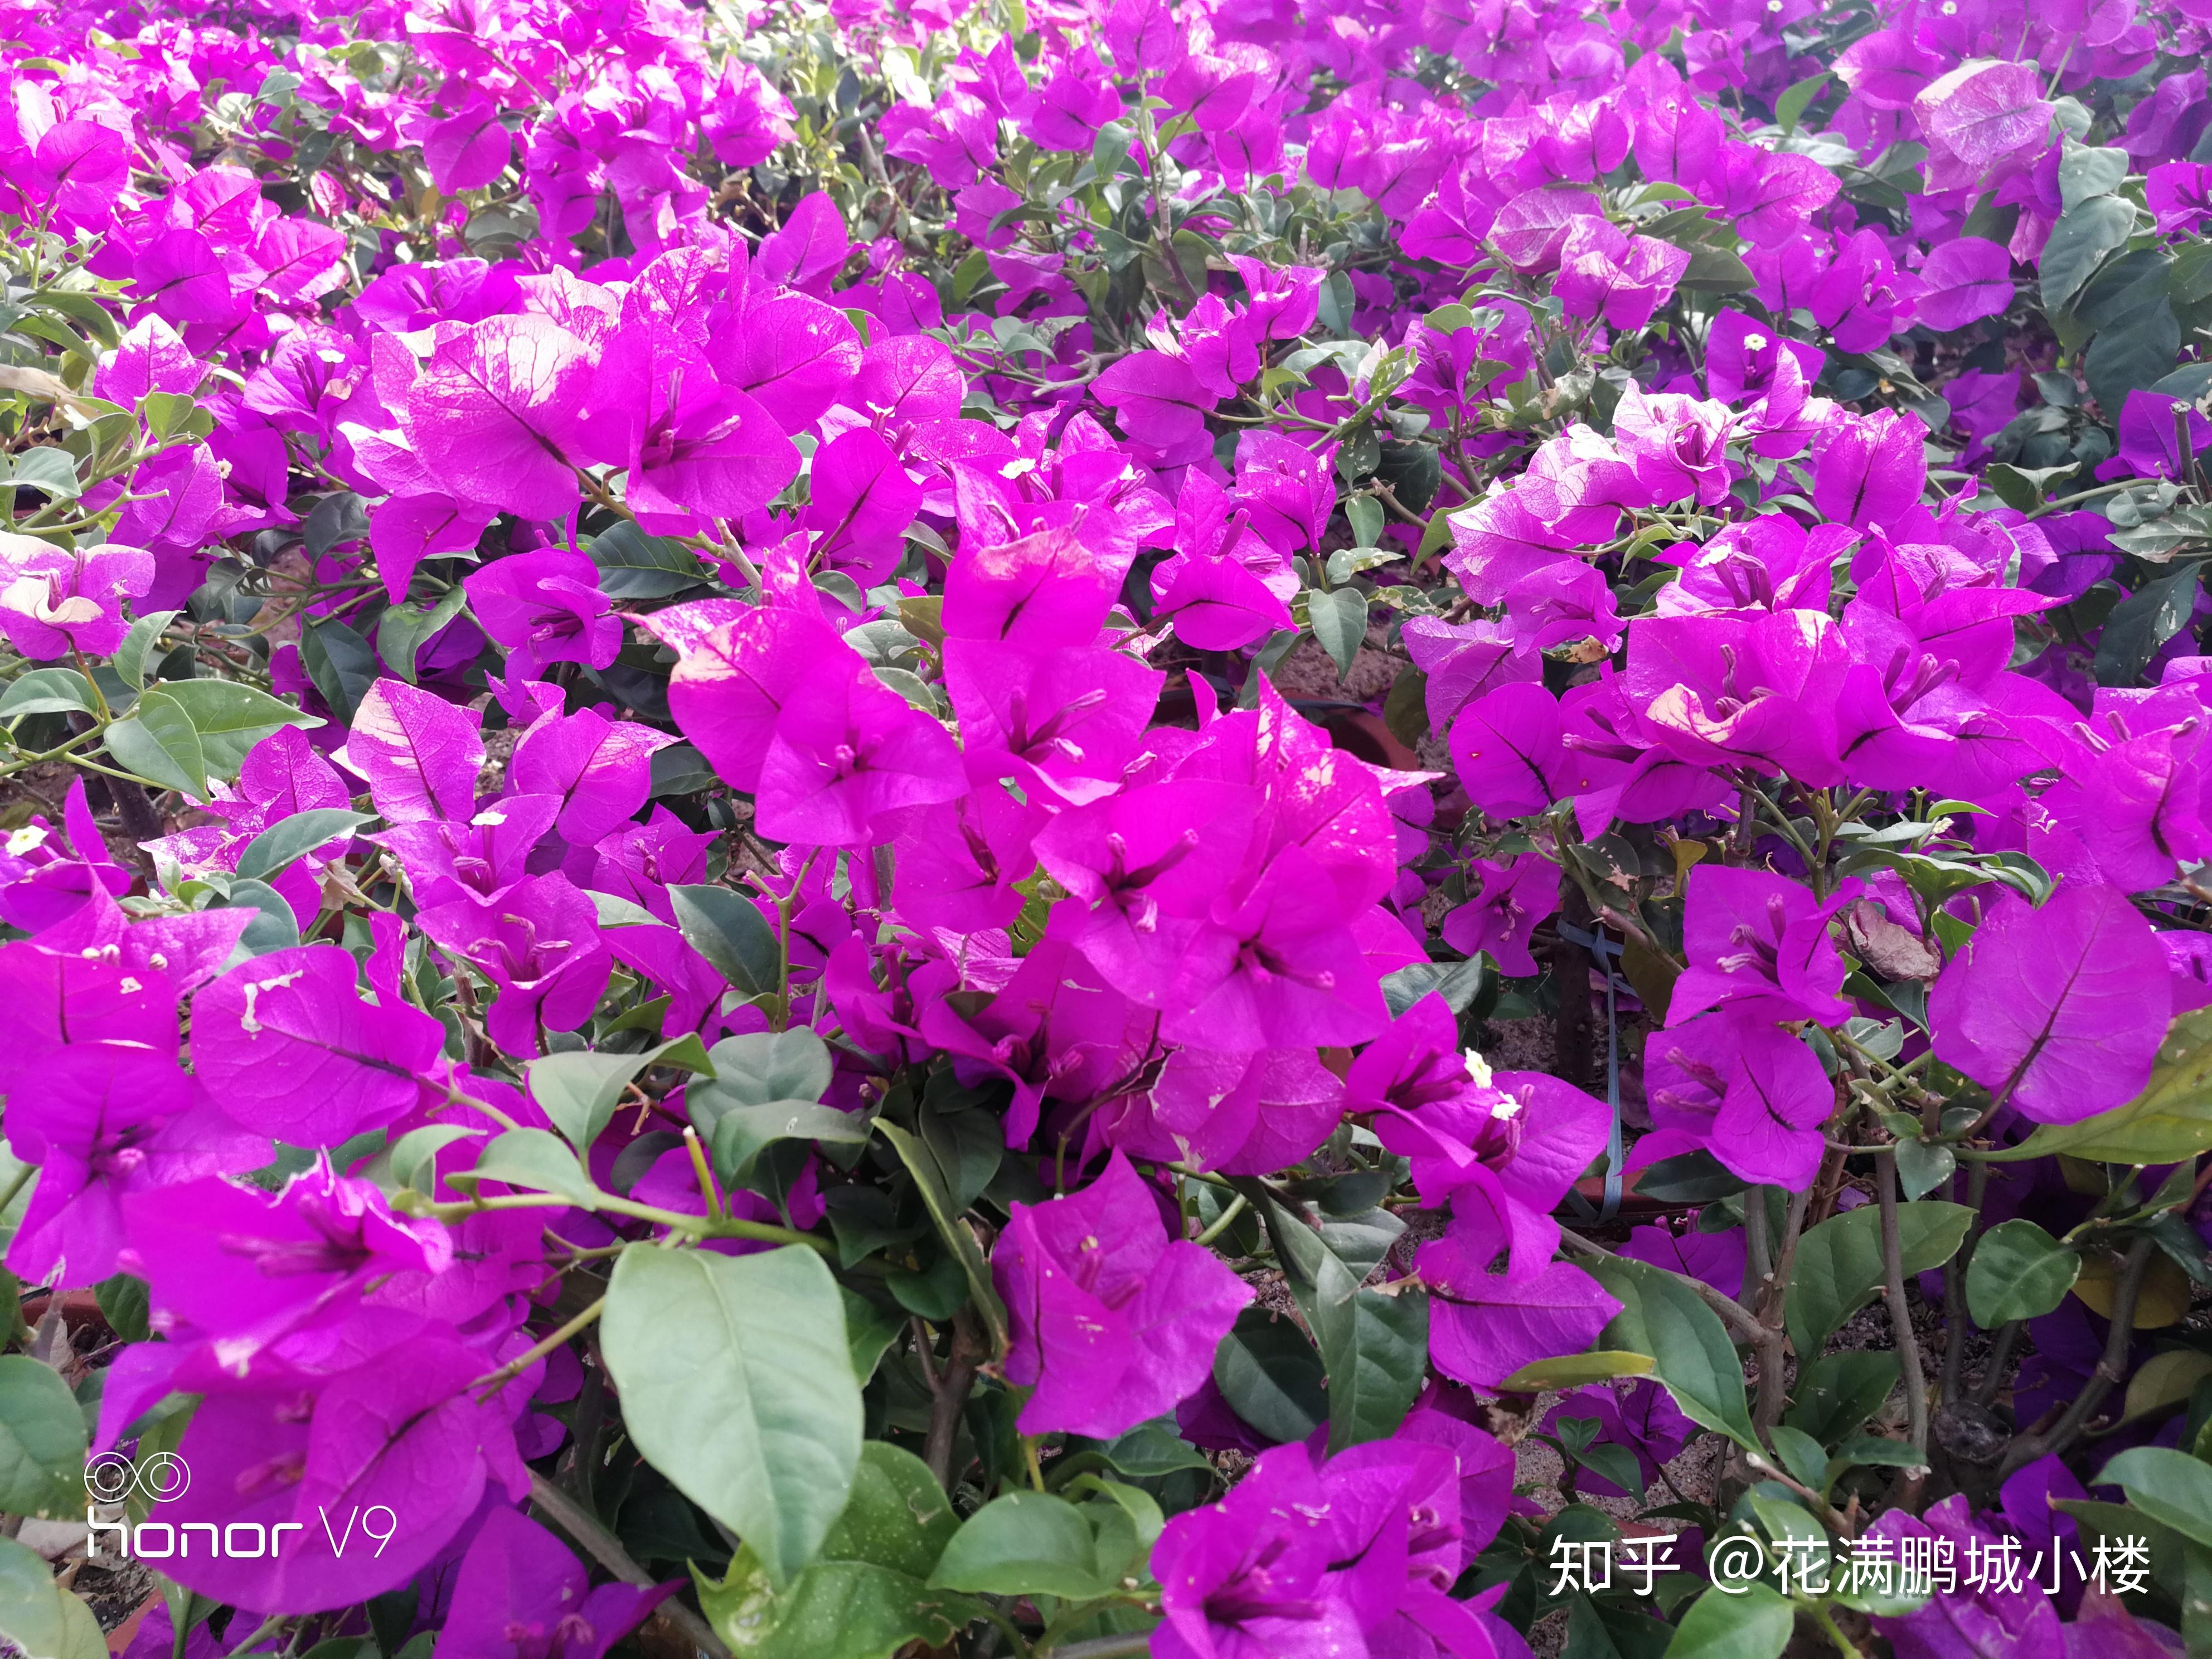 深圳莲花山公园勒杜鹃展,艳阳下耀眼的三角梅们